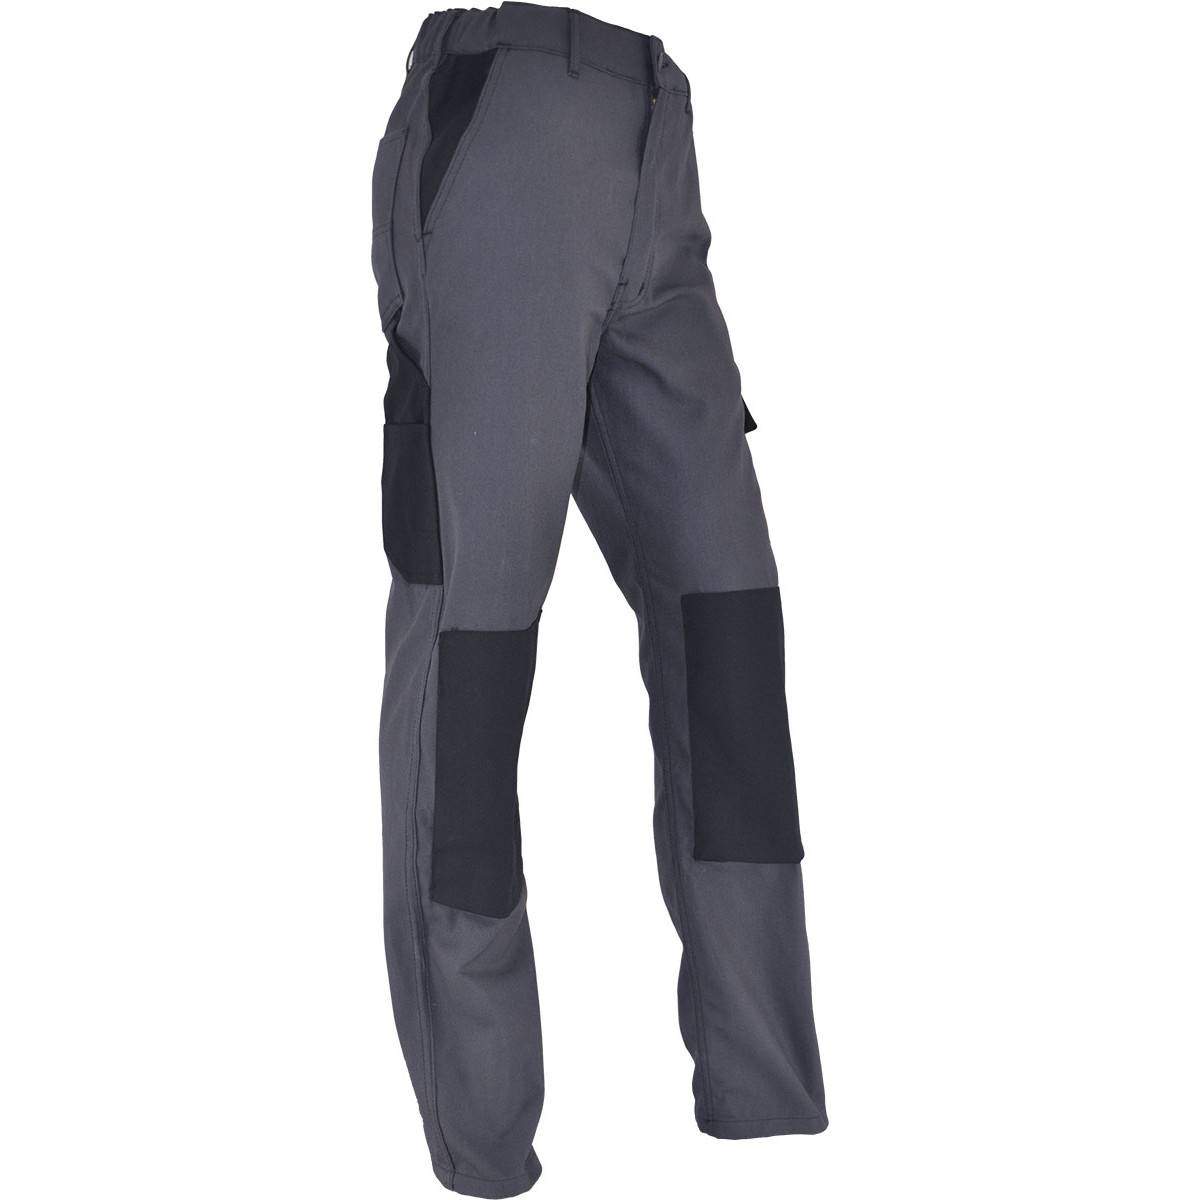 Pantalones de trabajo cómodos PMPC talla 38, gris antracita